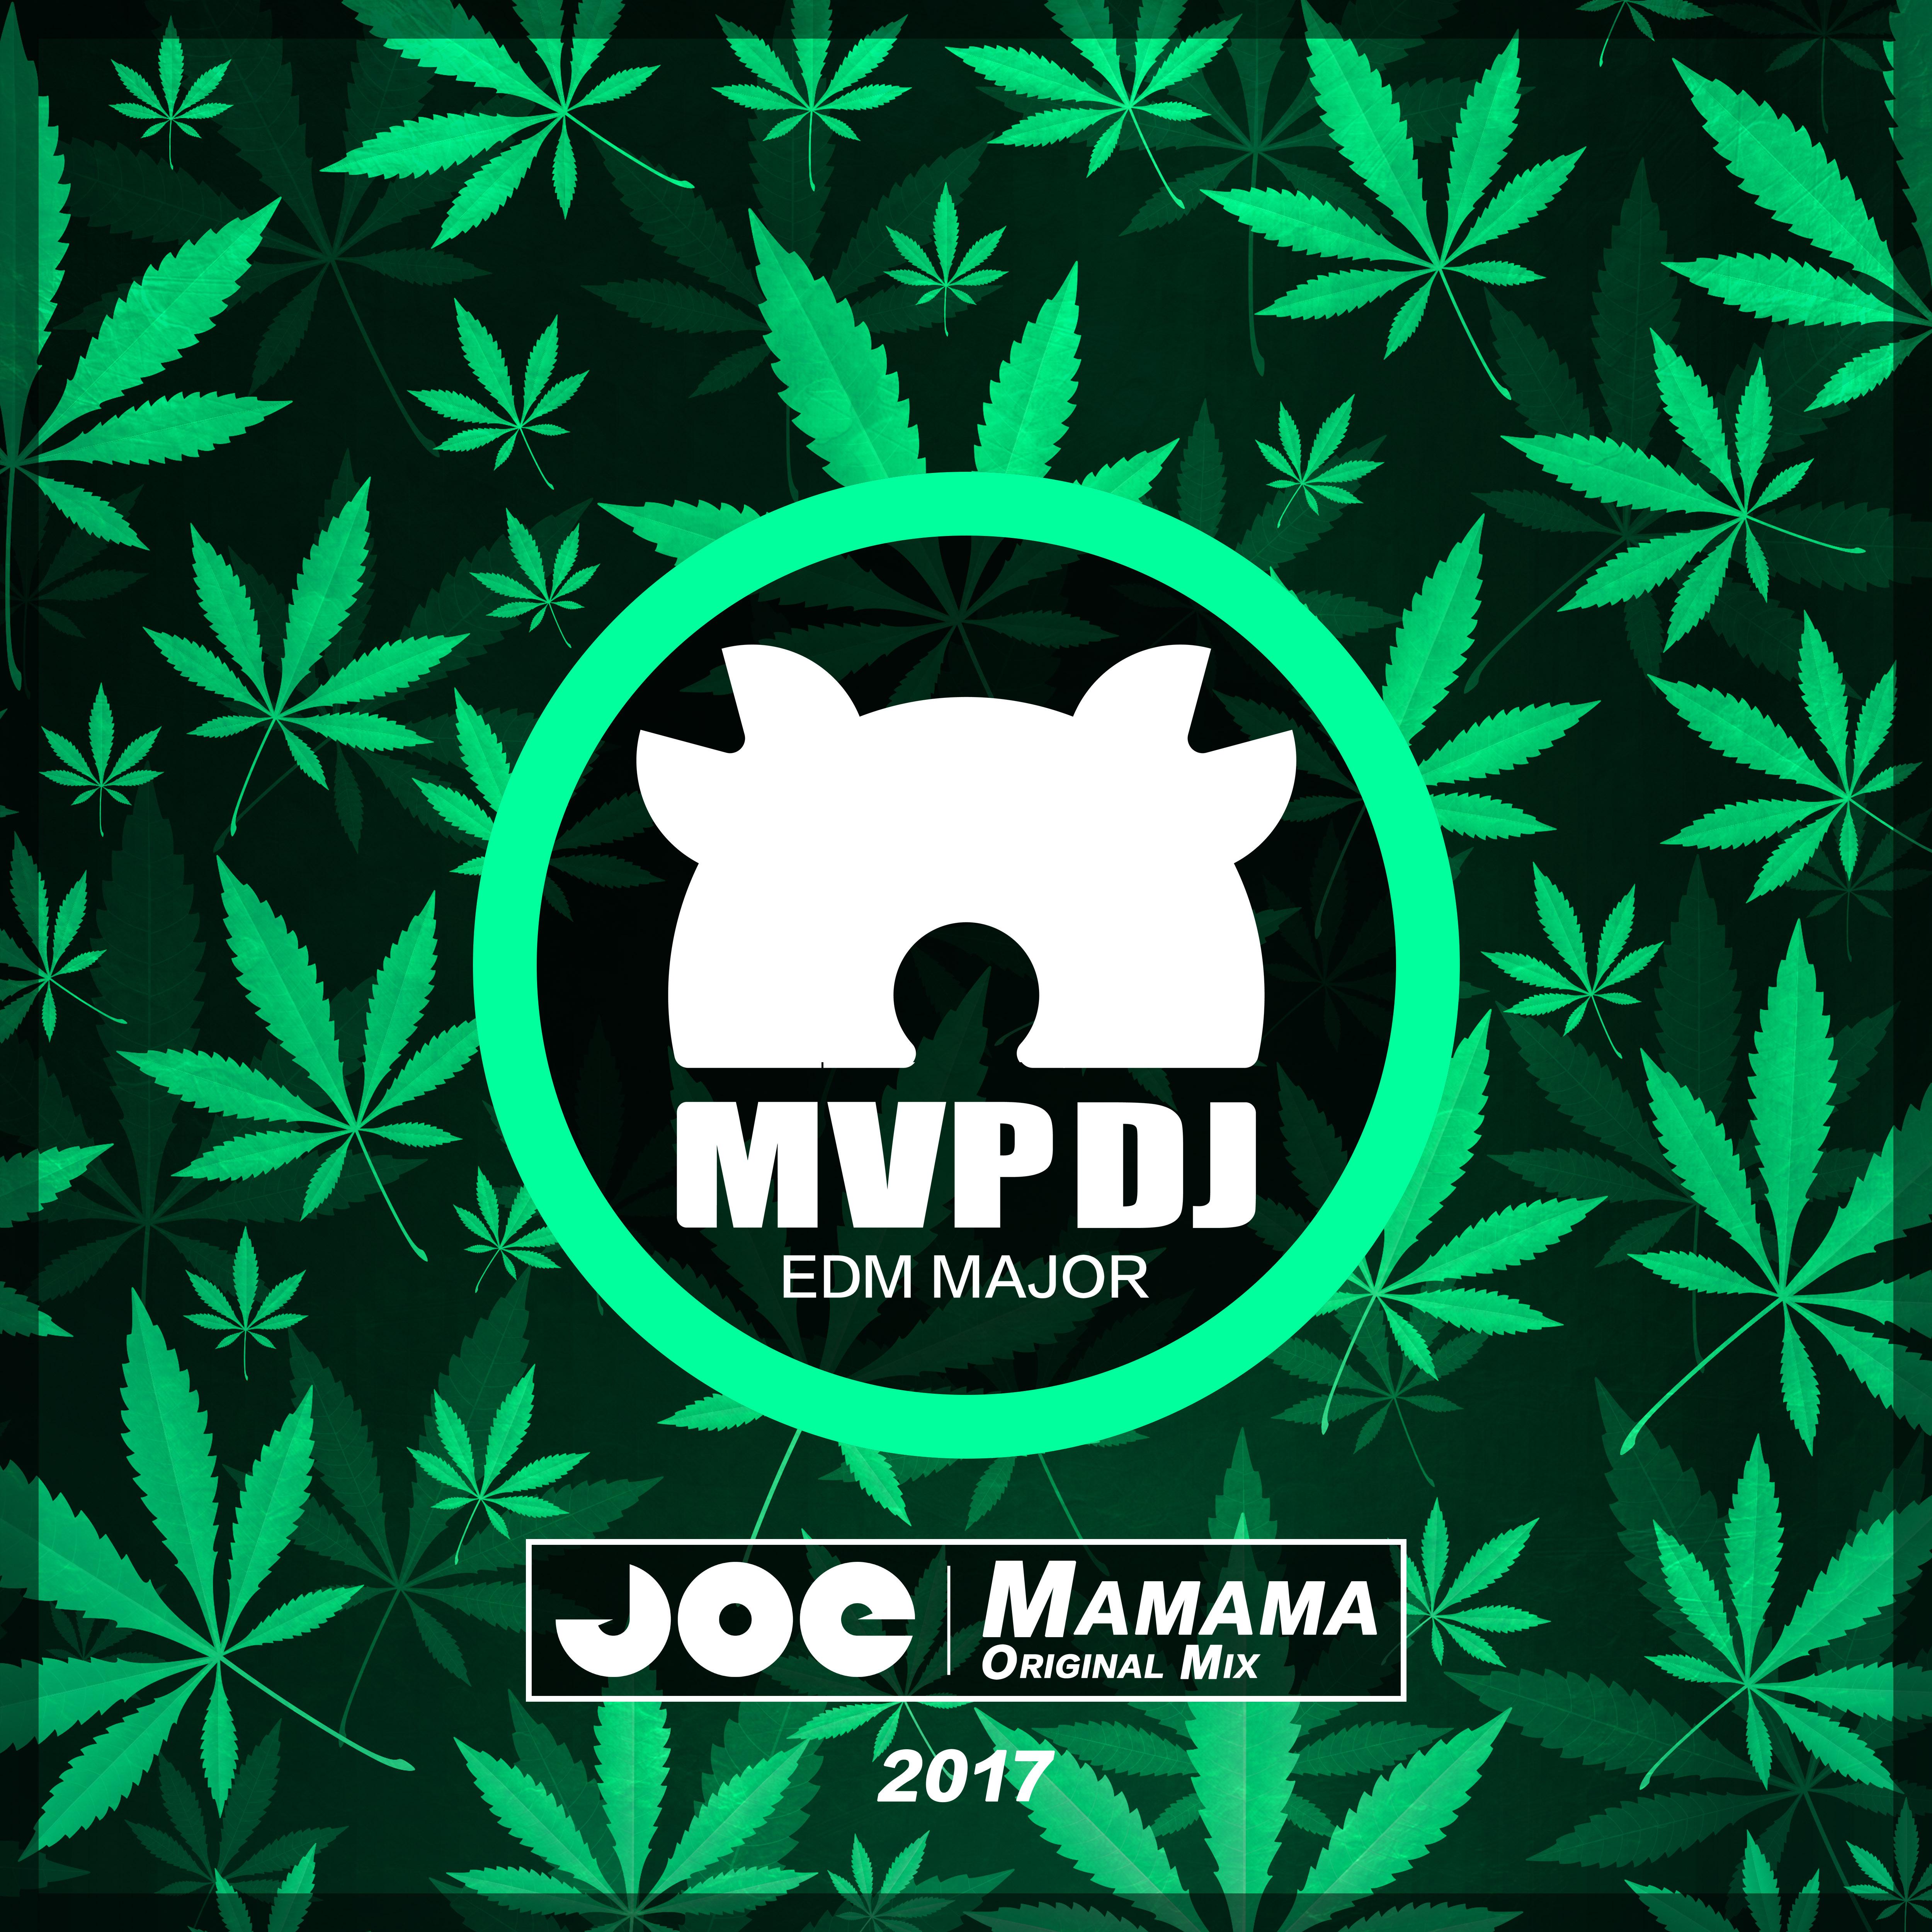 DJ JOE - Mamama (Original Mix)专辑